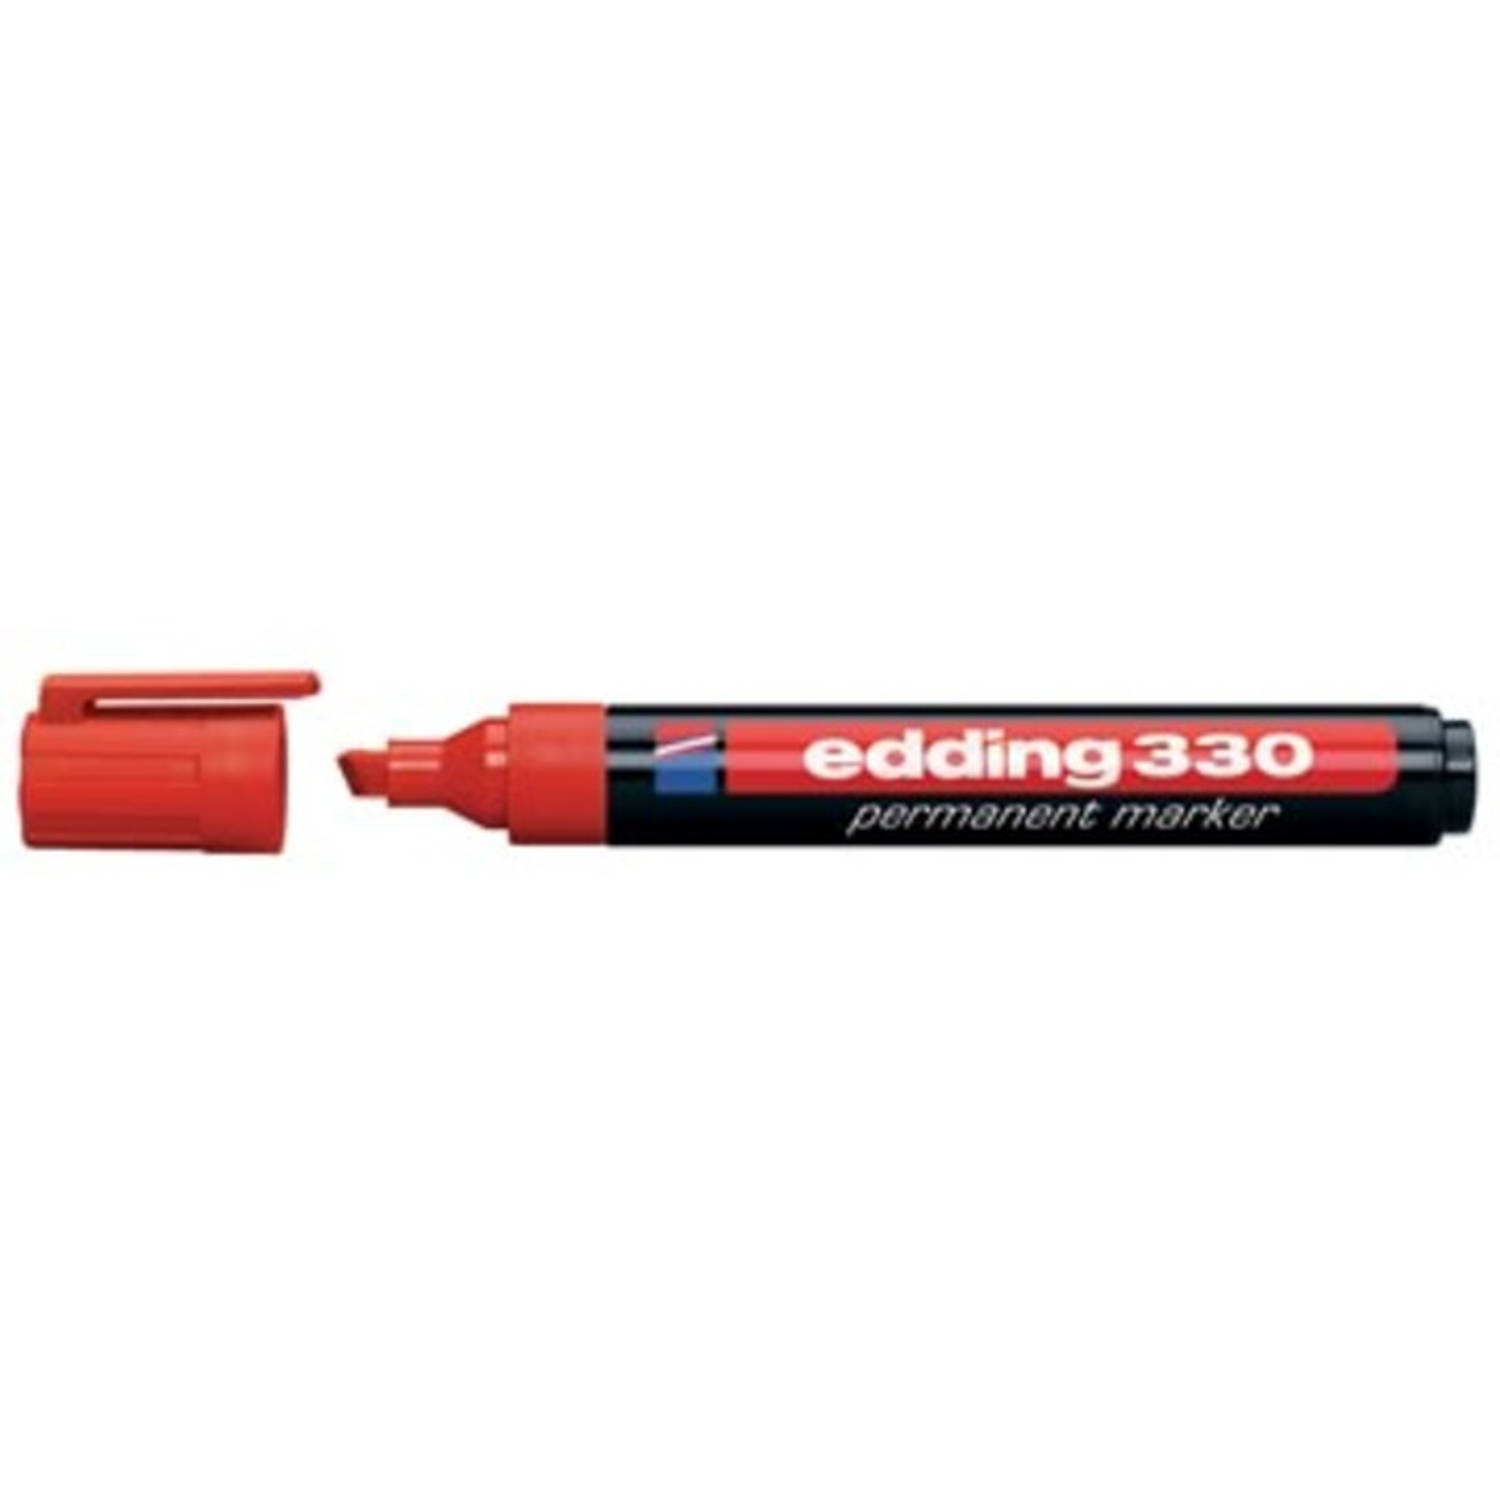 Edding permanente marker e-330 rood